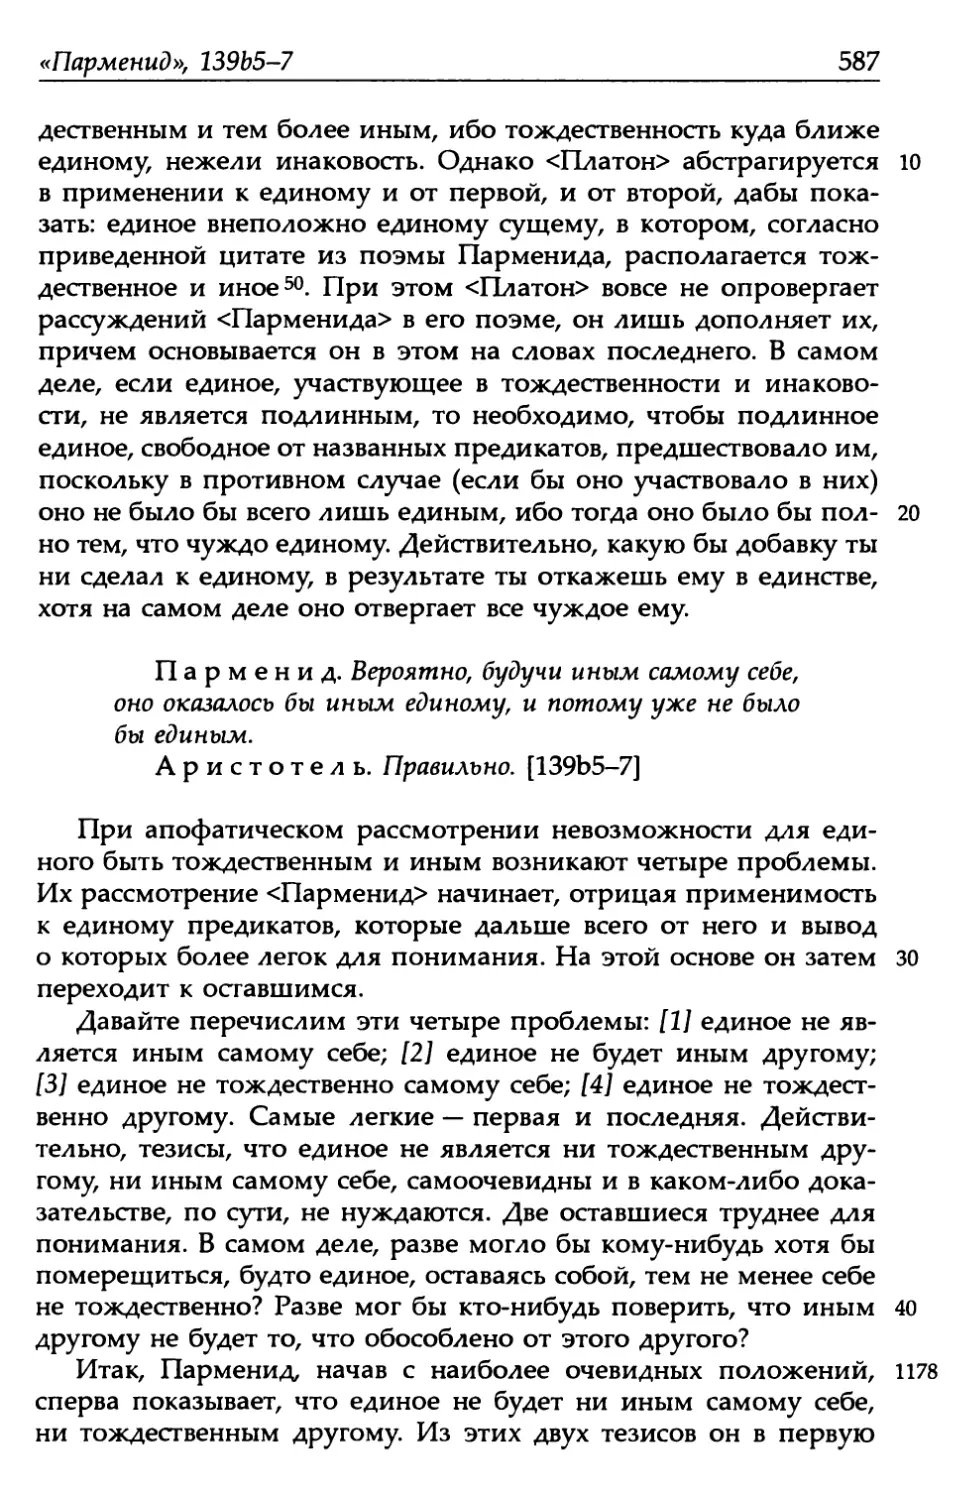 «Парменид», 139b5-7